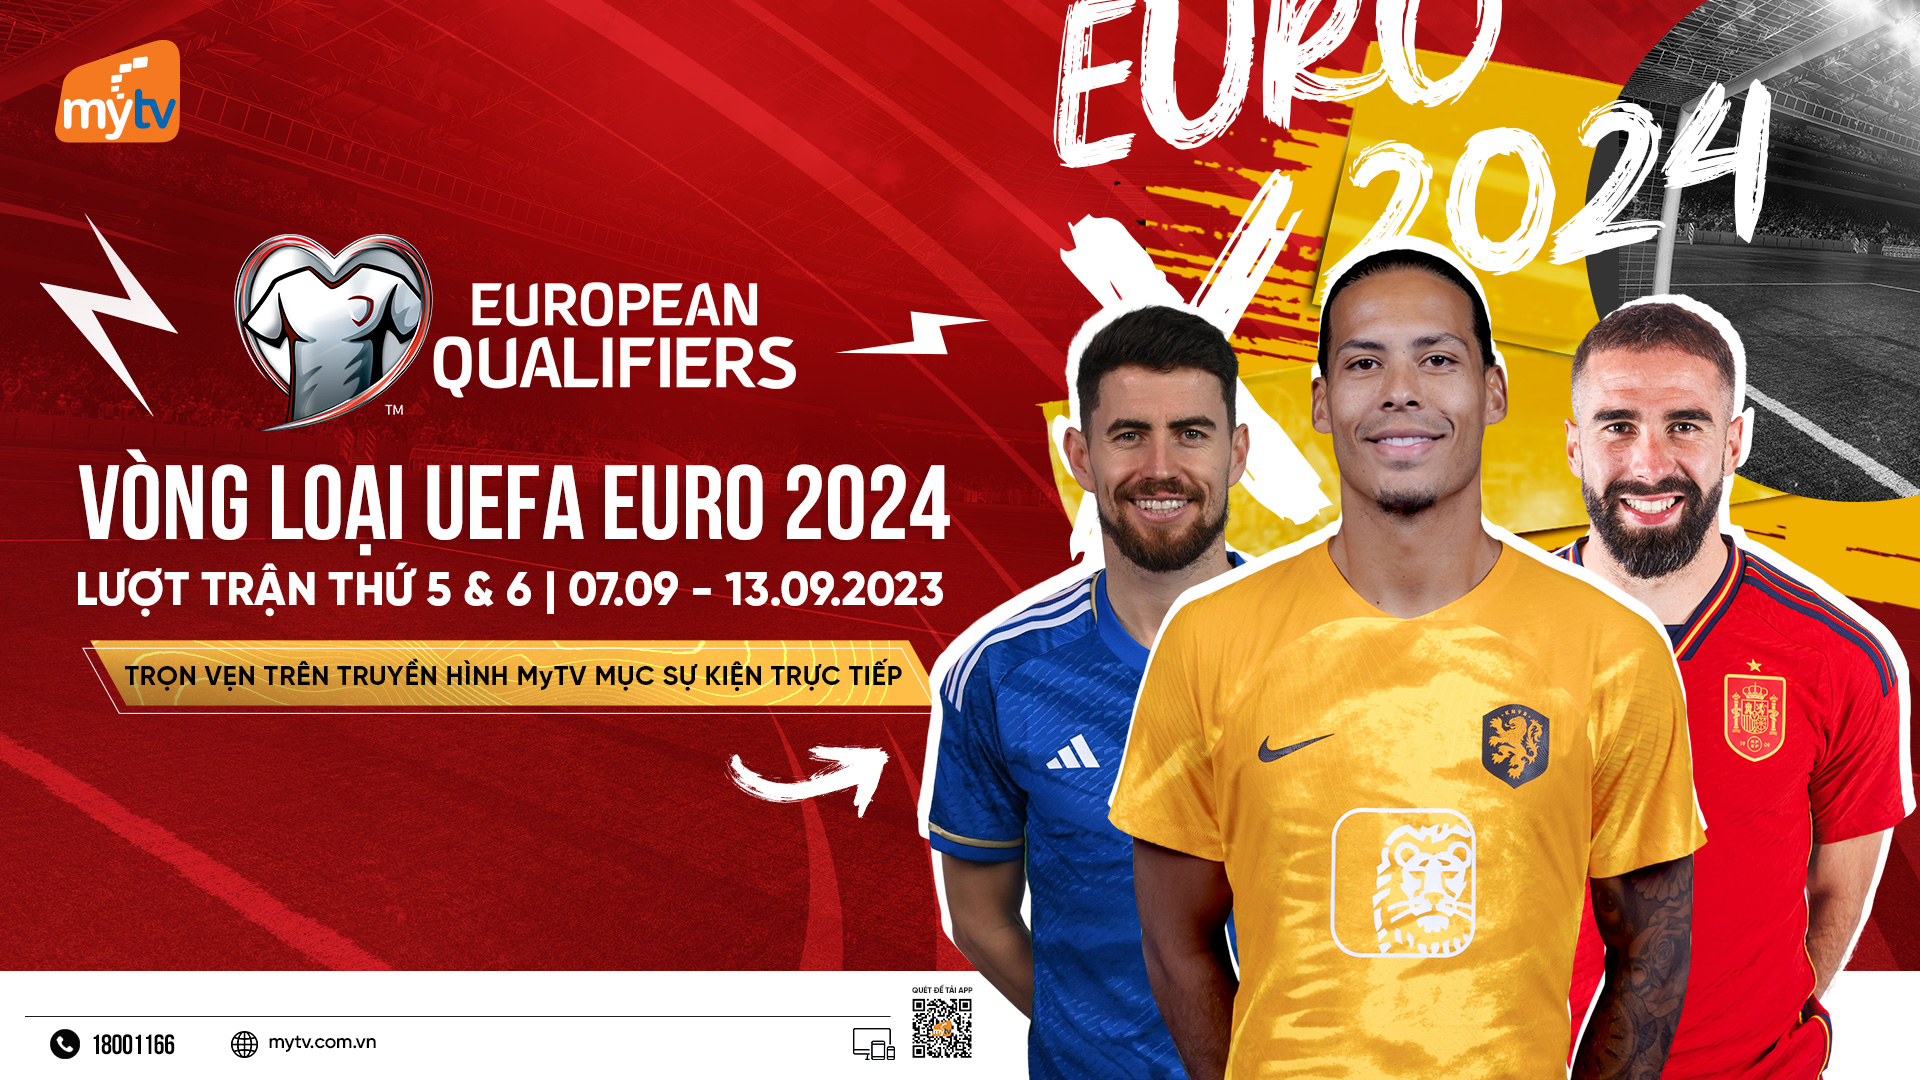 Xem vòng loại Euro 2024 trực tiếp trên truyền hình MyTV: khởi tranh lượt trận 5, 6 - ảnh 1